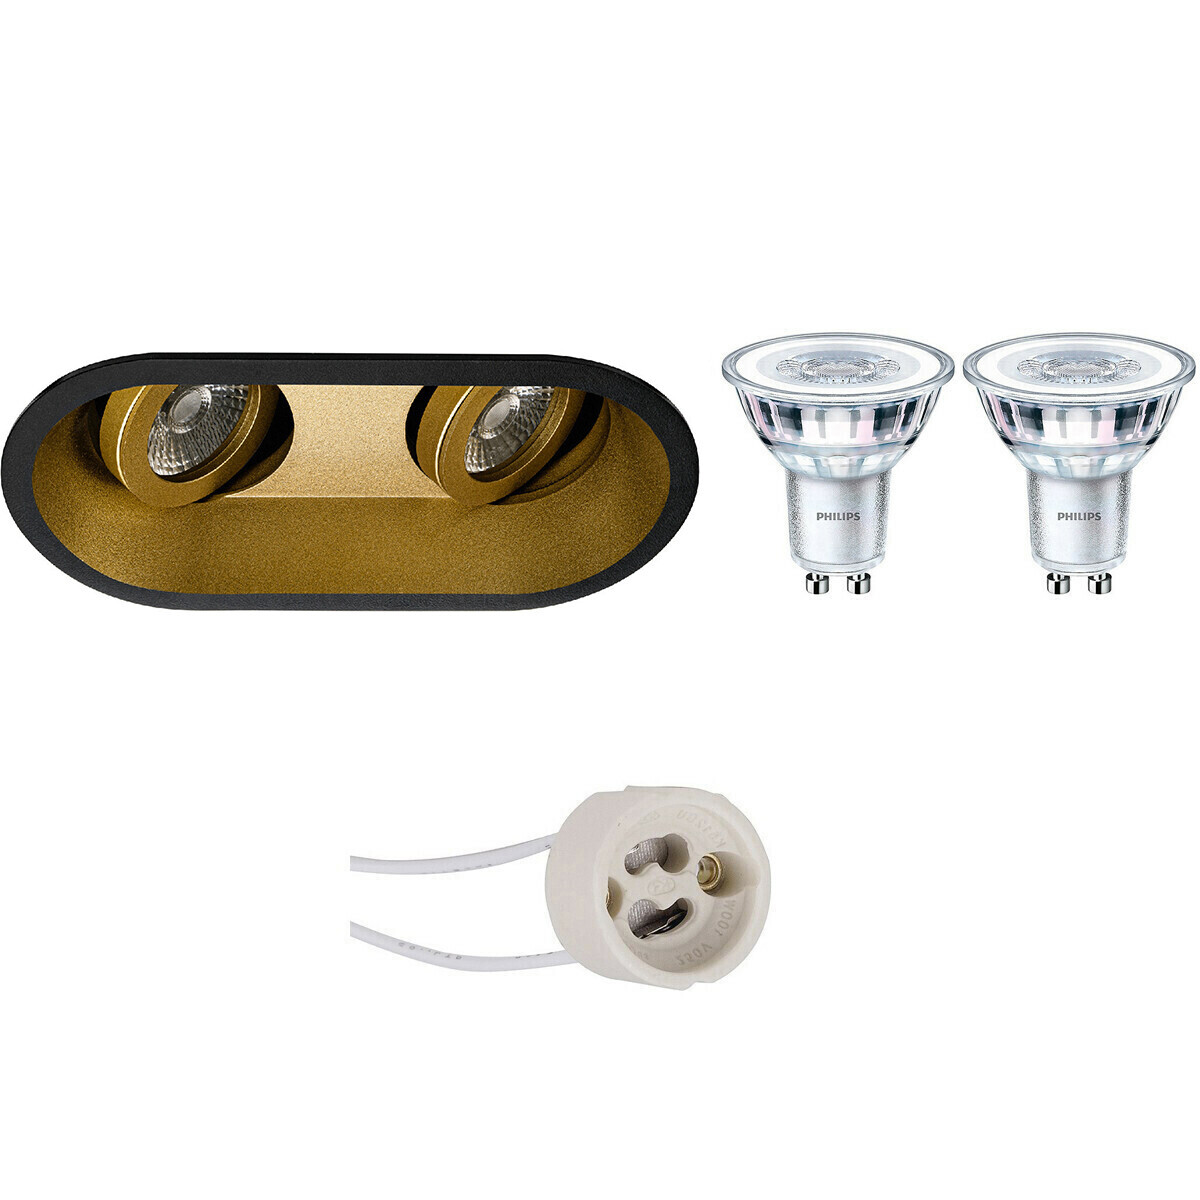 BES LED LED Spot Set - Pragmi Zano Pro - GU10 Fitting - Inbouw Ovaal Dubbel - Mat Zwart/Goud - Kantelbaar - 185x93mm - Philips - CorePro 827 36D - 4.6W - Warm Wit 2700K